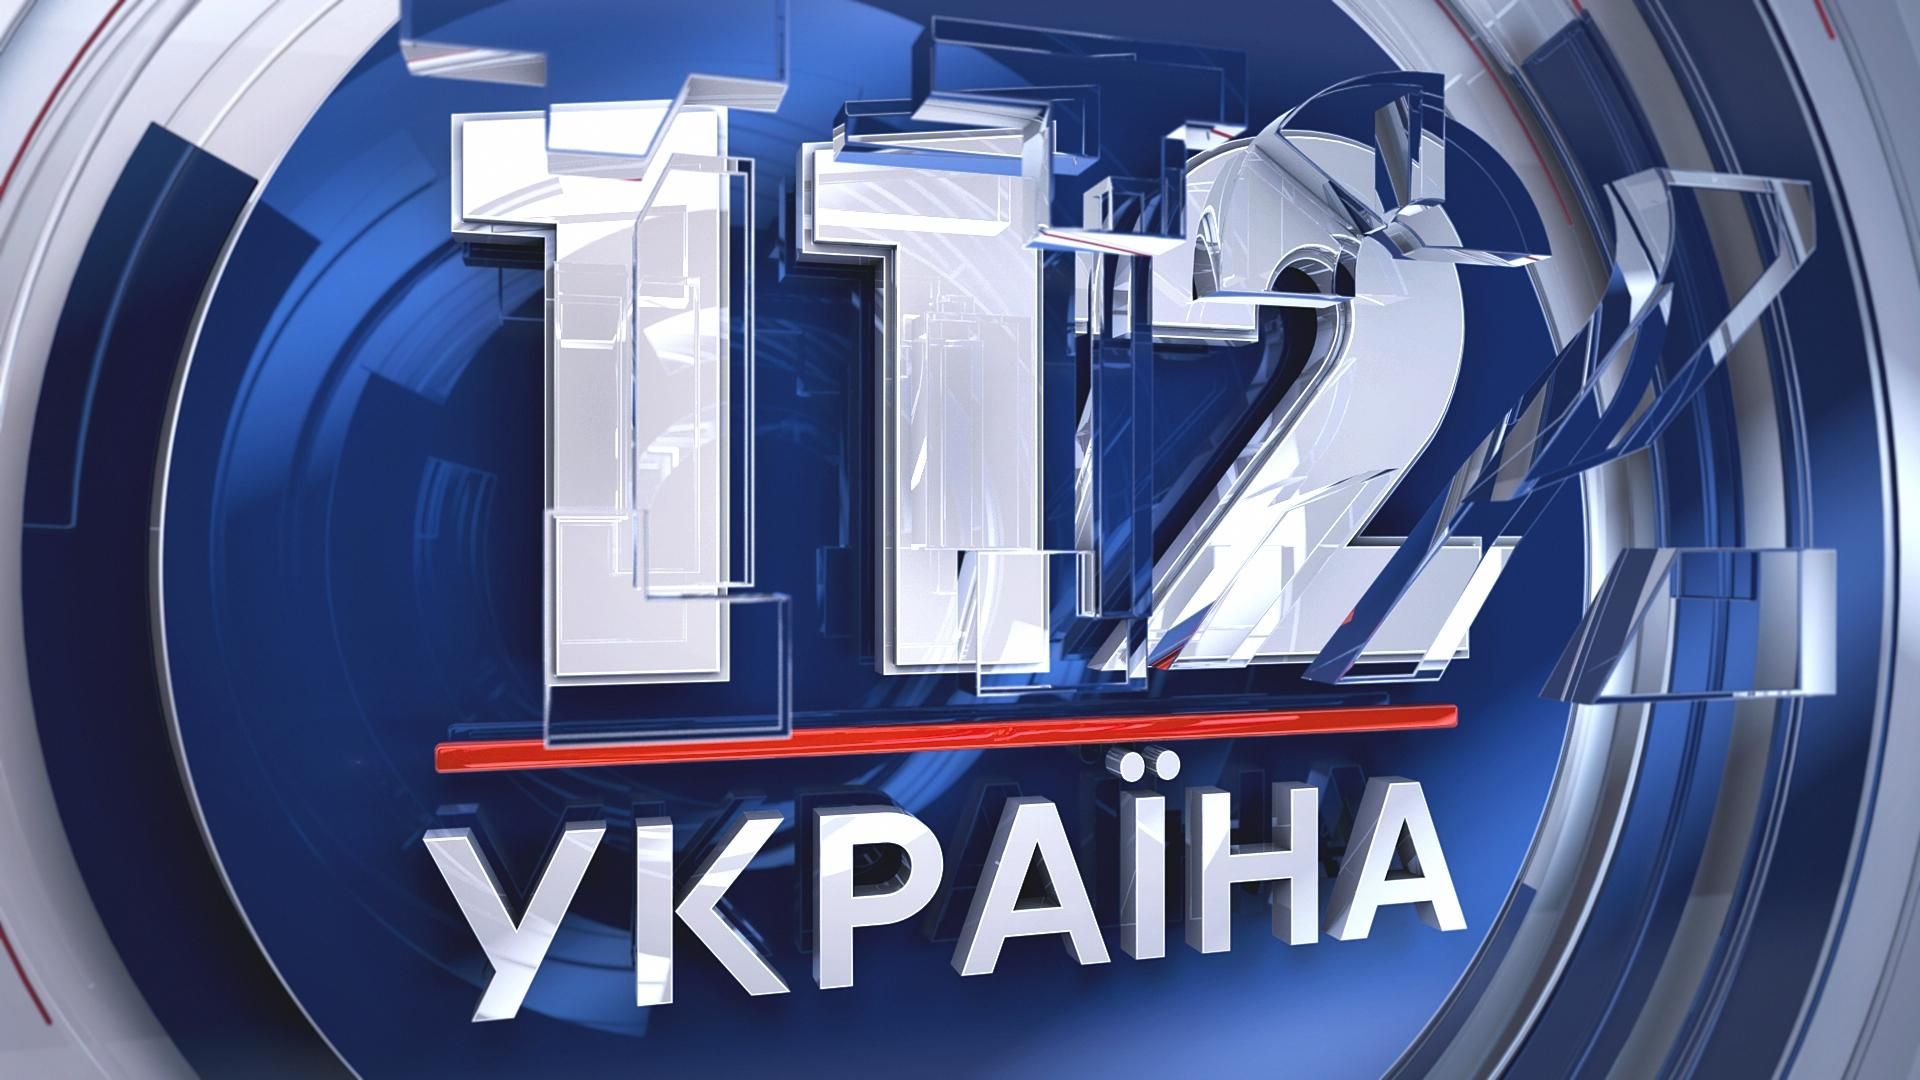 Нацрада оголосила попередження 112 каналу: подробиці інциденту